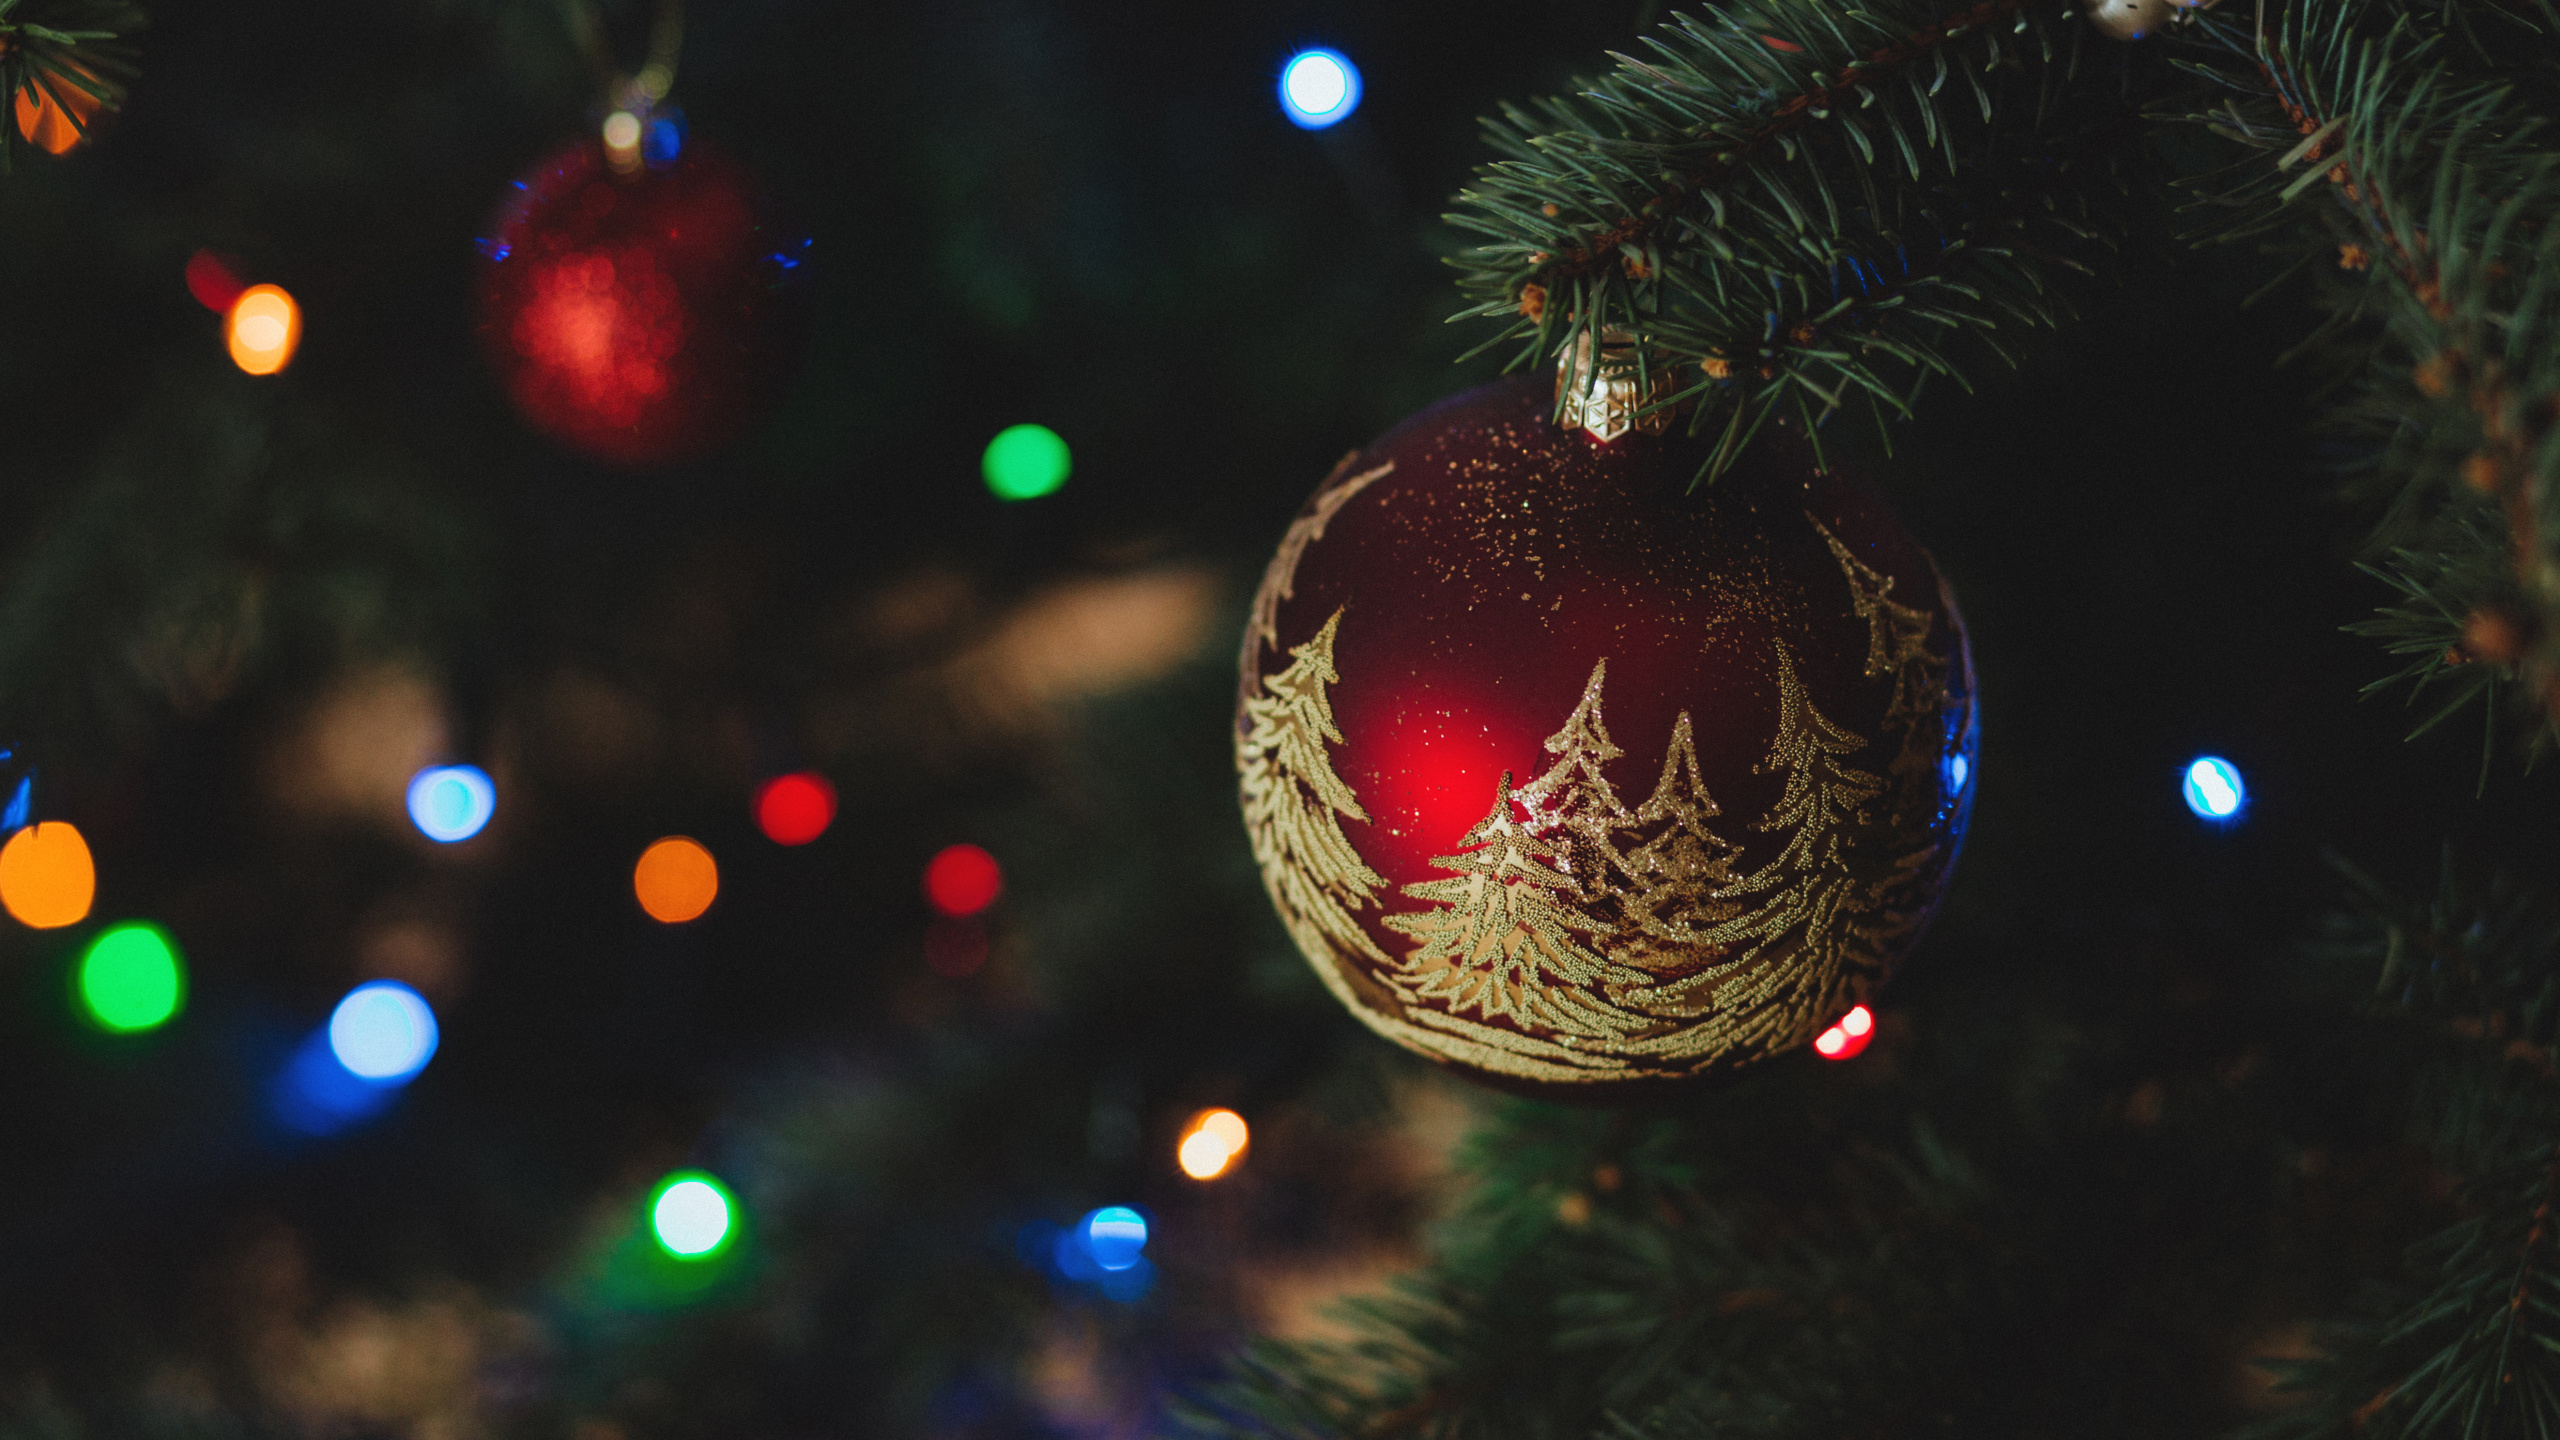 Weihnachten, Weihnachtsdekoration, Christmas Ornament, Weihnachtsbaum, Baum. Wallpaper in 2560x1440 Resolution